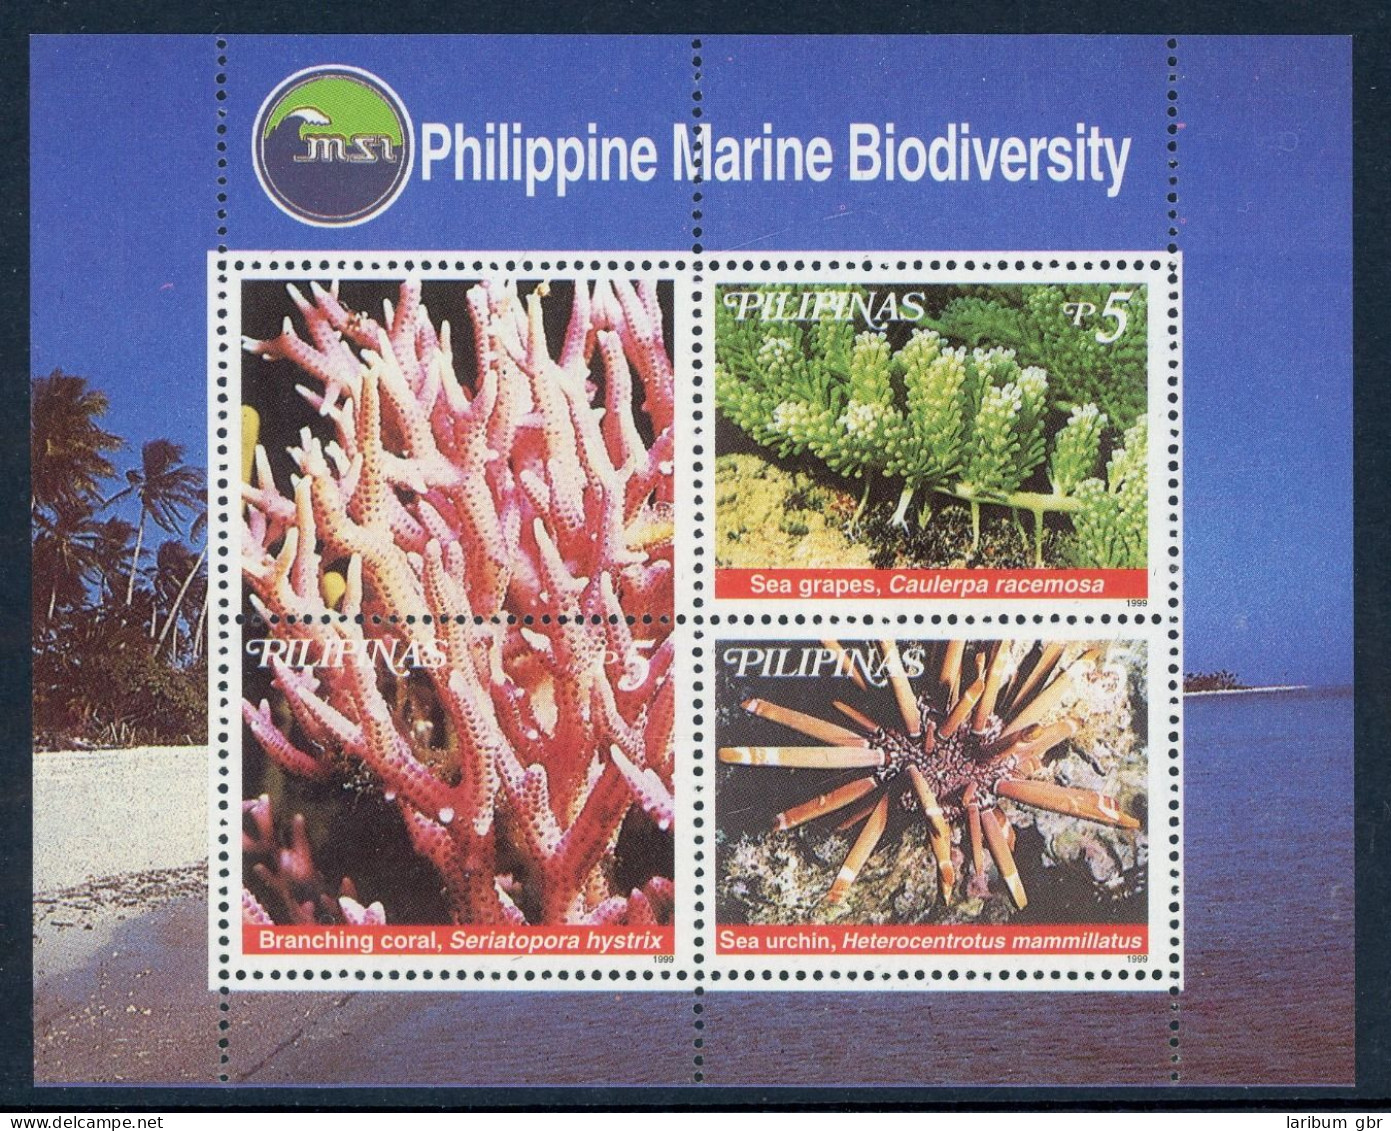 Philippinen Block 146 Postfrisch Korallen #HB303 - Philippinen